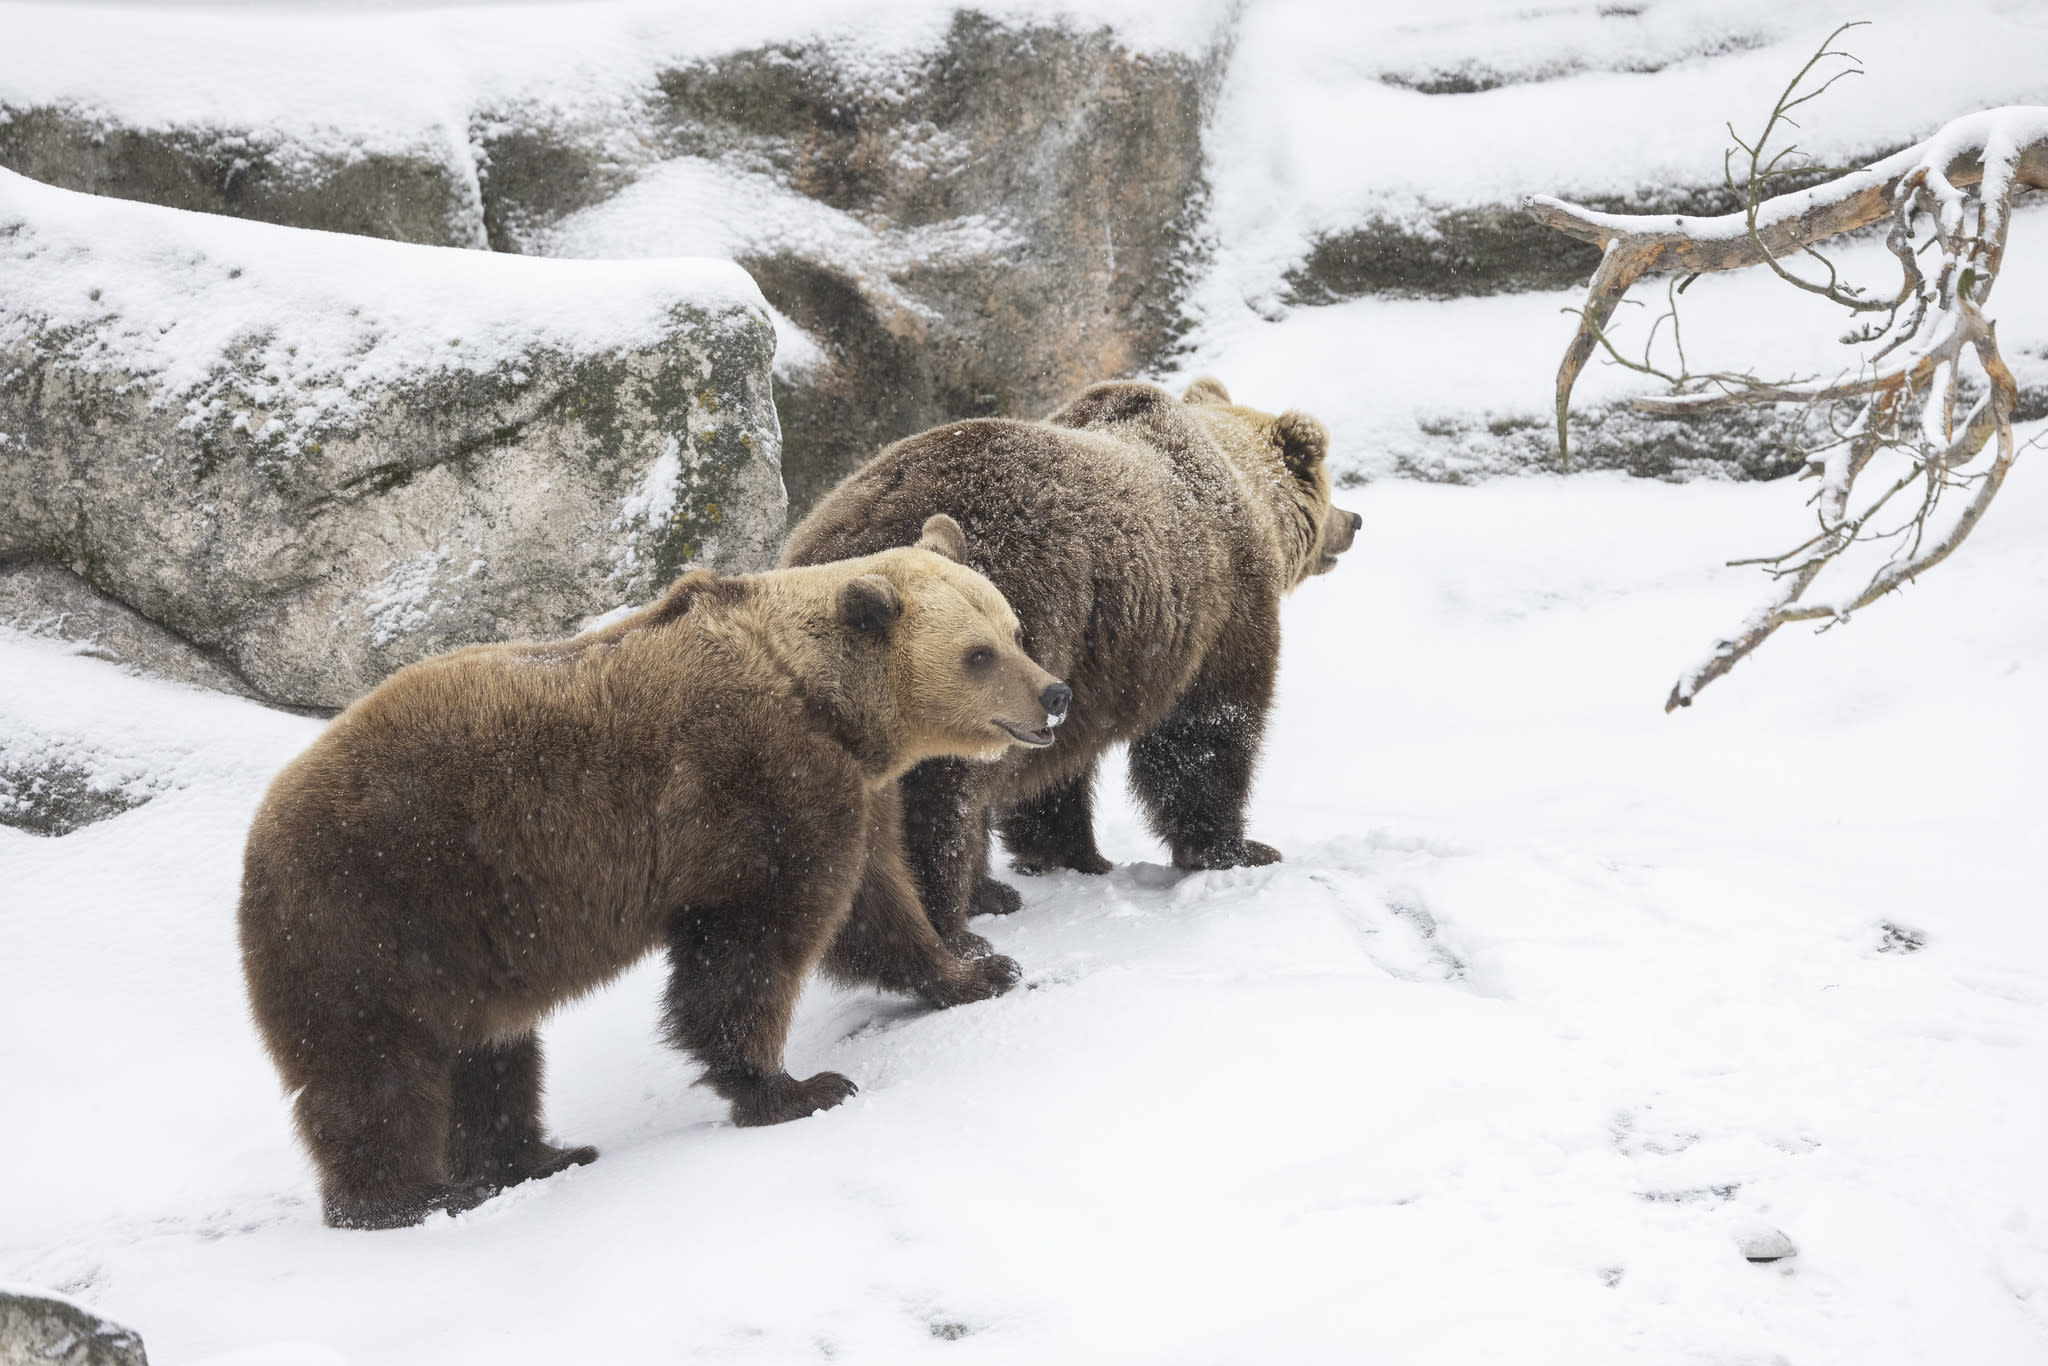 Beruang Zoo Helsinki bermain salji selepas hibernasi